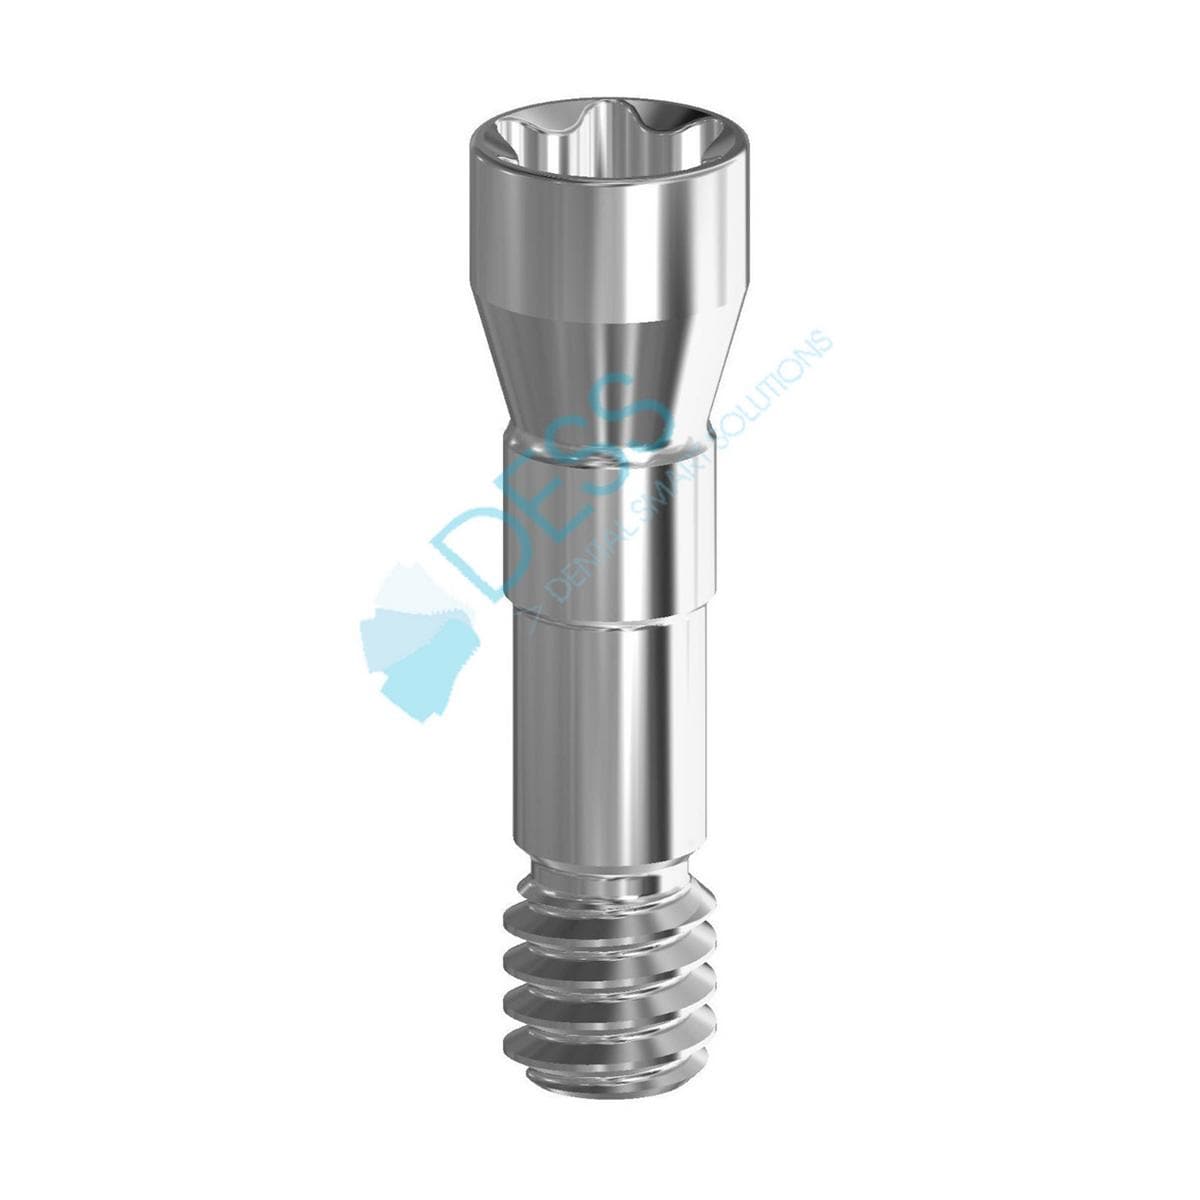 Abutmentschraube Torx® auf Implantat - kompatibel mit Straumann® Bone Level® - NC Ø 3,3 mm, Packung 10 Stück